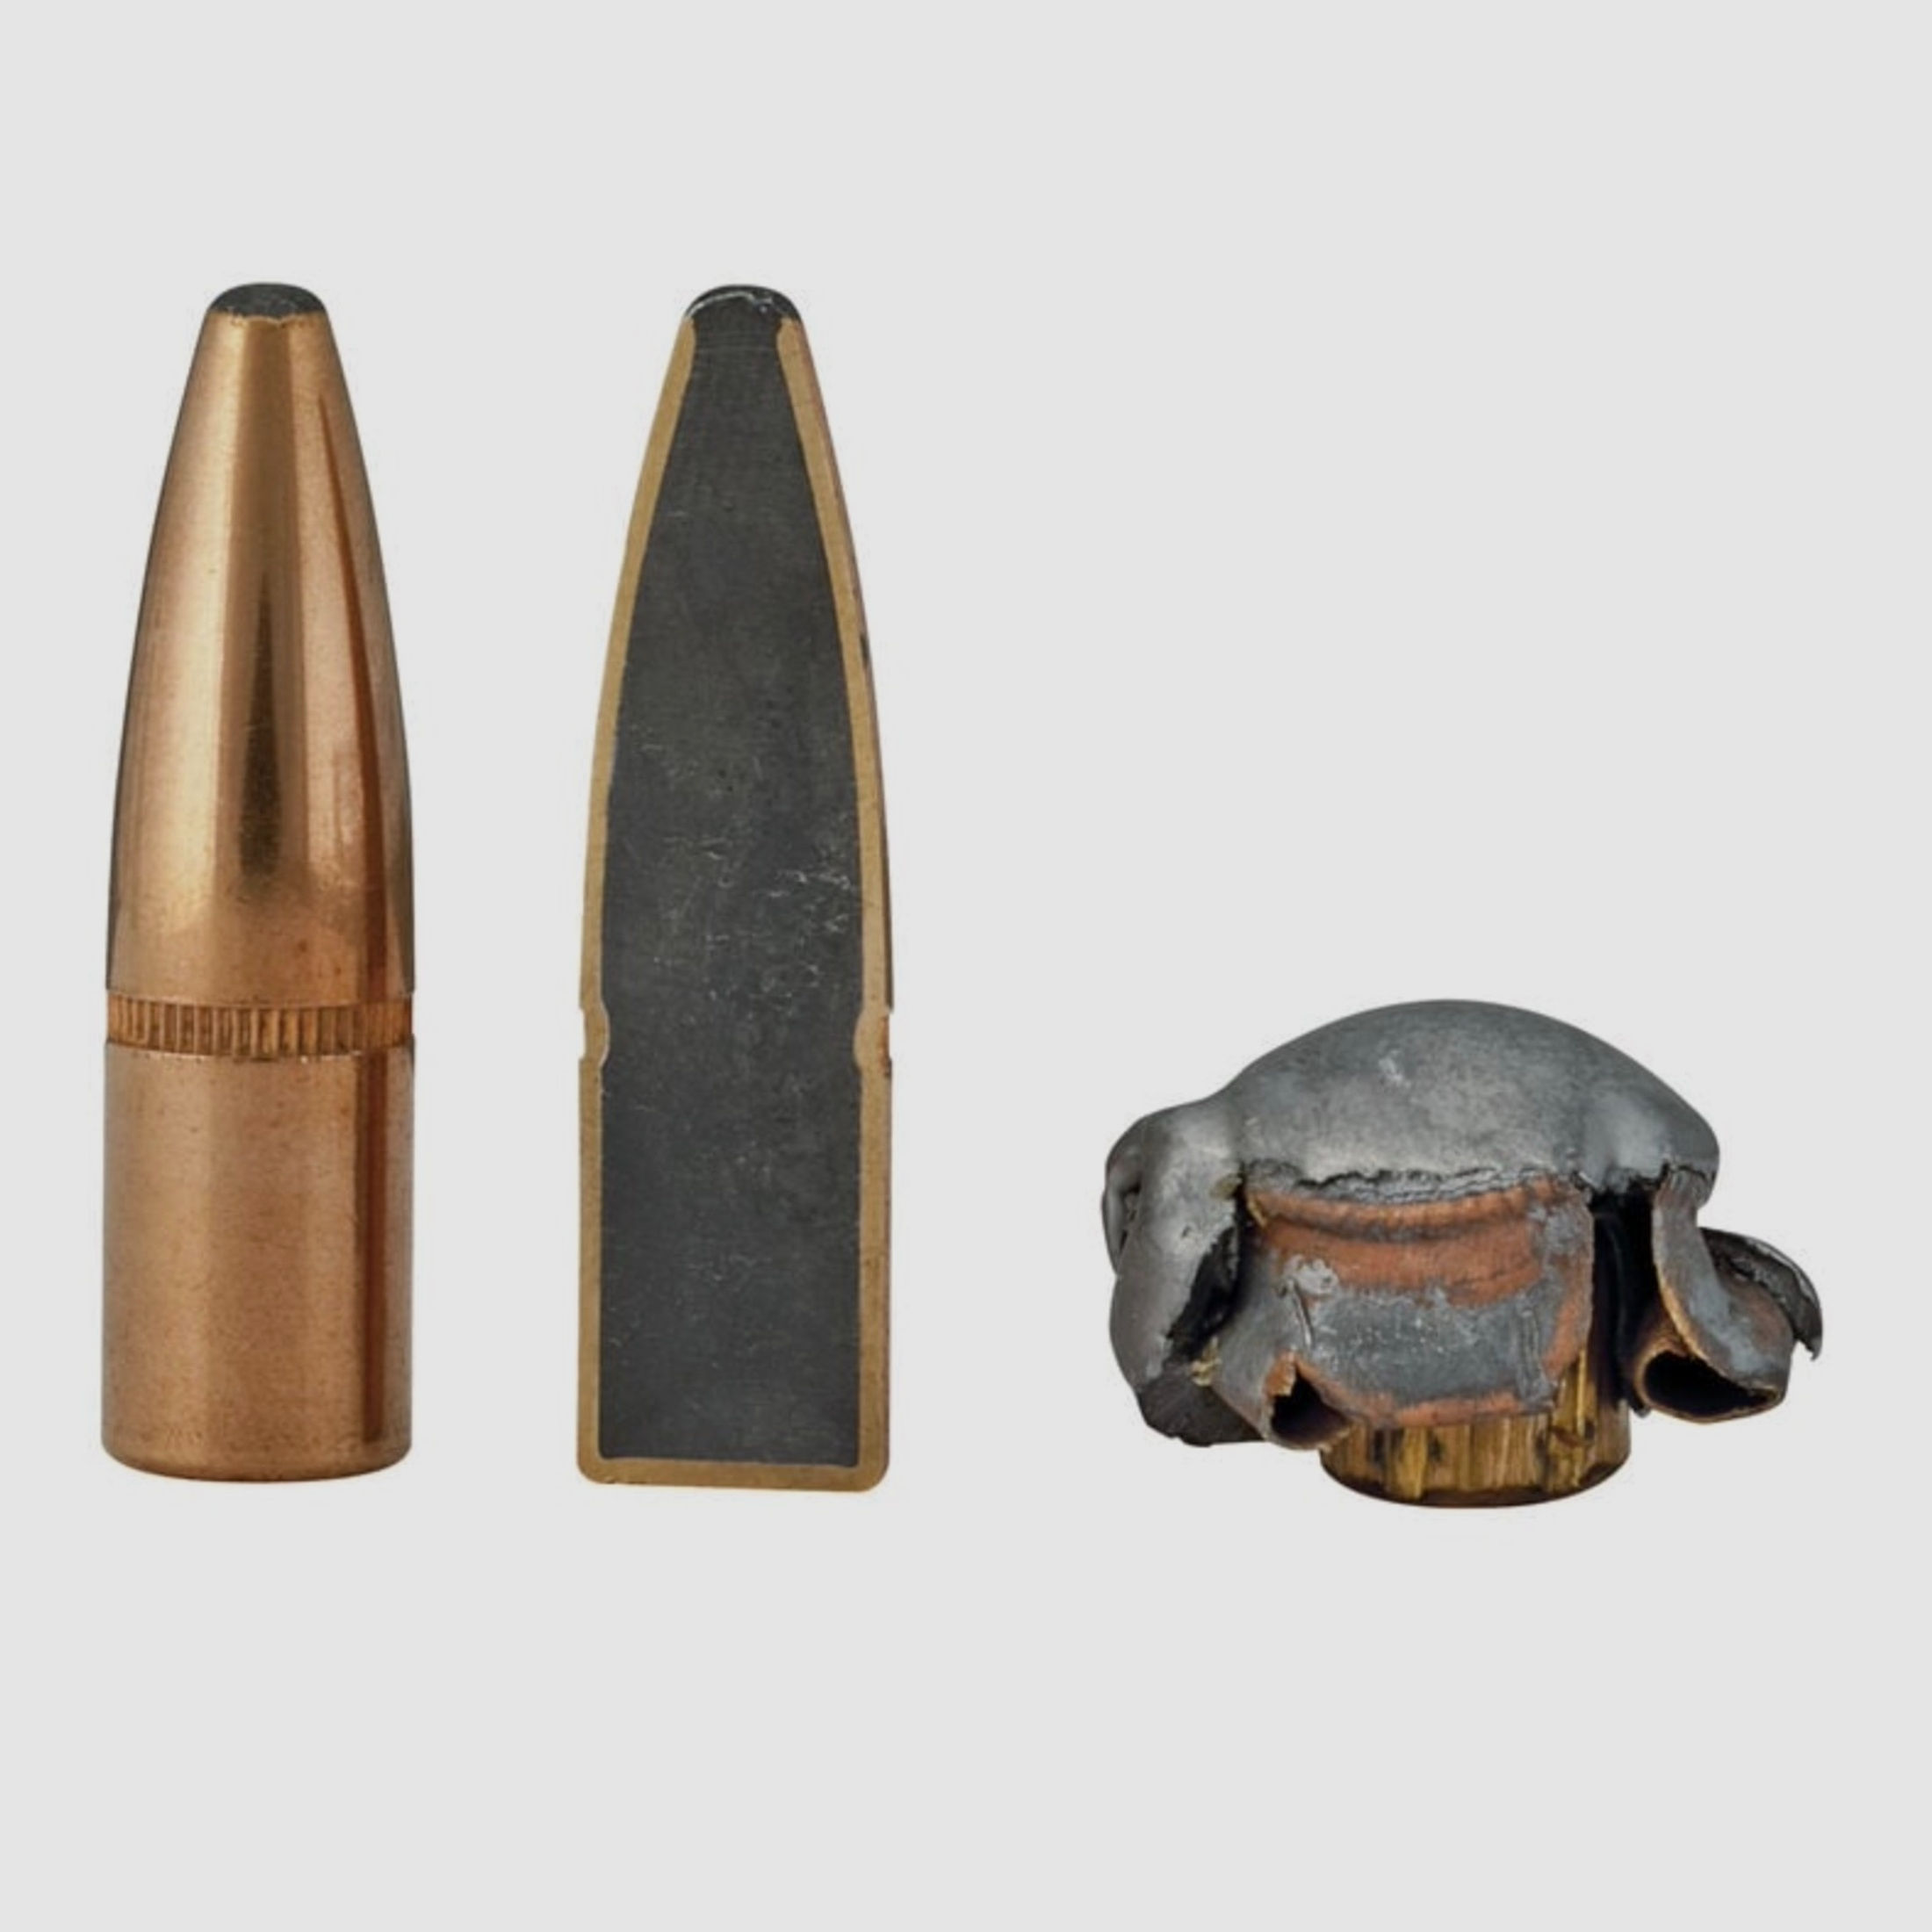 Federal Ammunition .30-06 Spr. Power Shok Tlm 11,7g 180grs. Langwaffenmunition